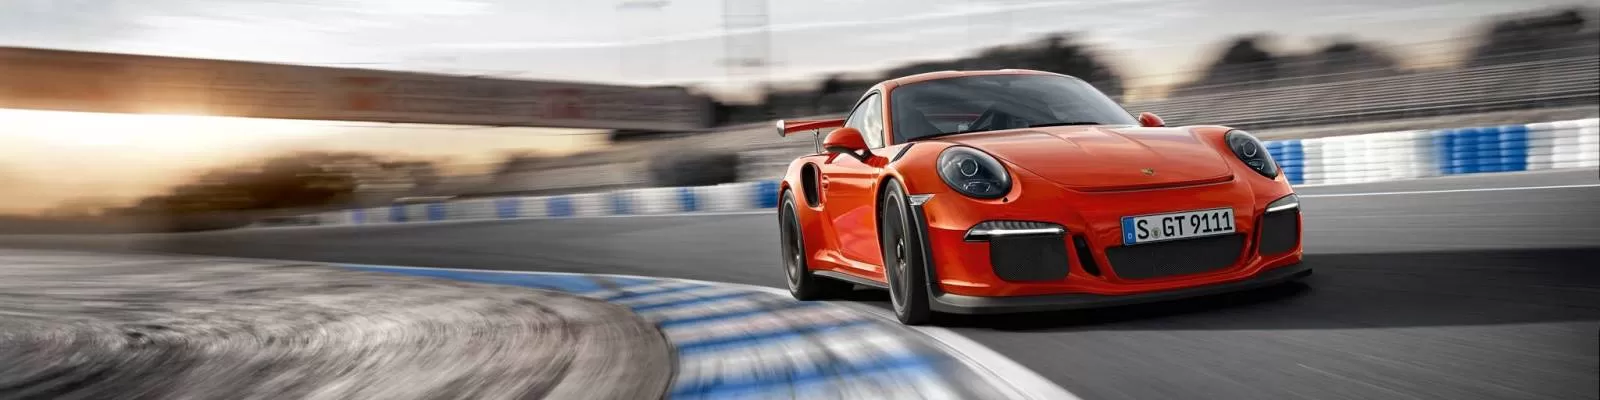 Porsche 911 GT3 RS: гоночный автомобиль для кольцевых трасс и повседневных поездок